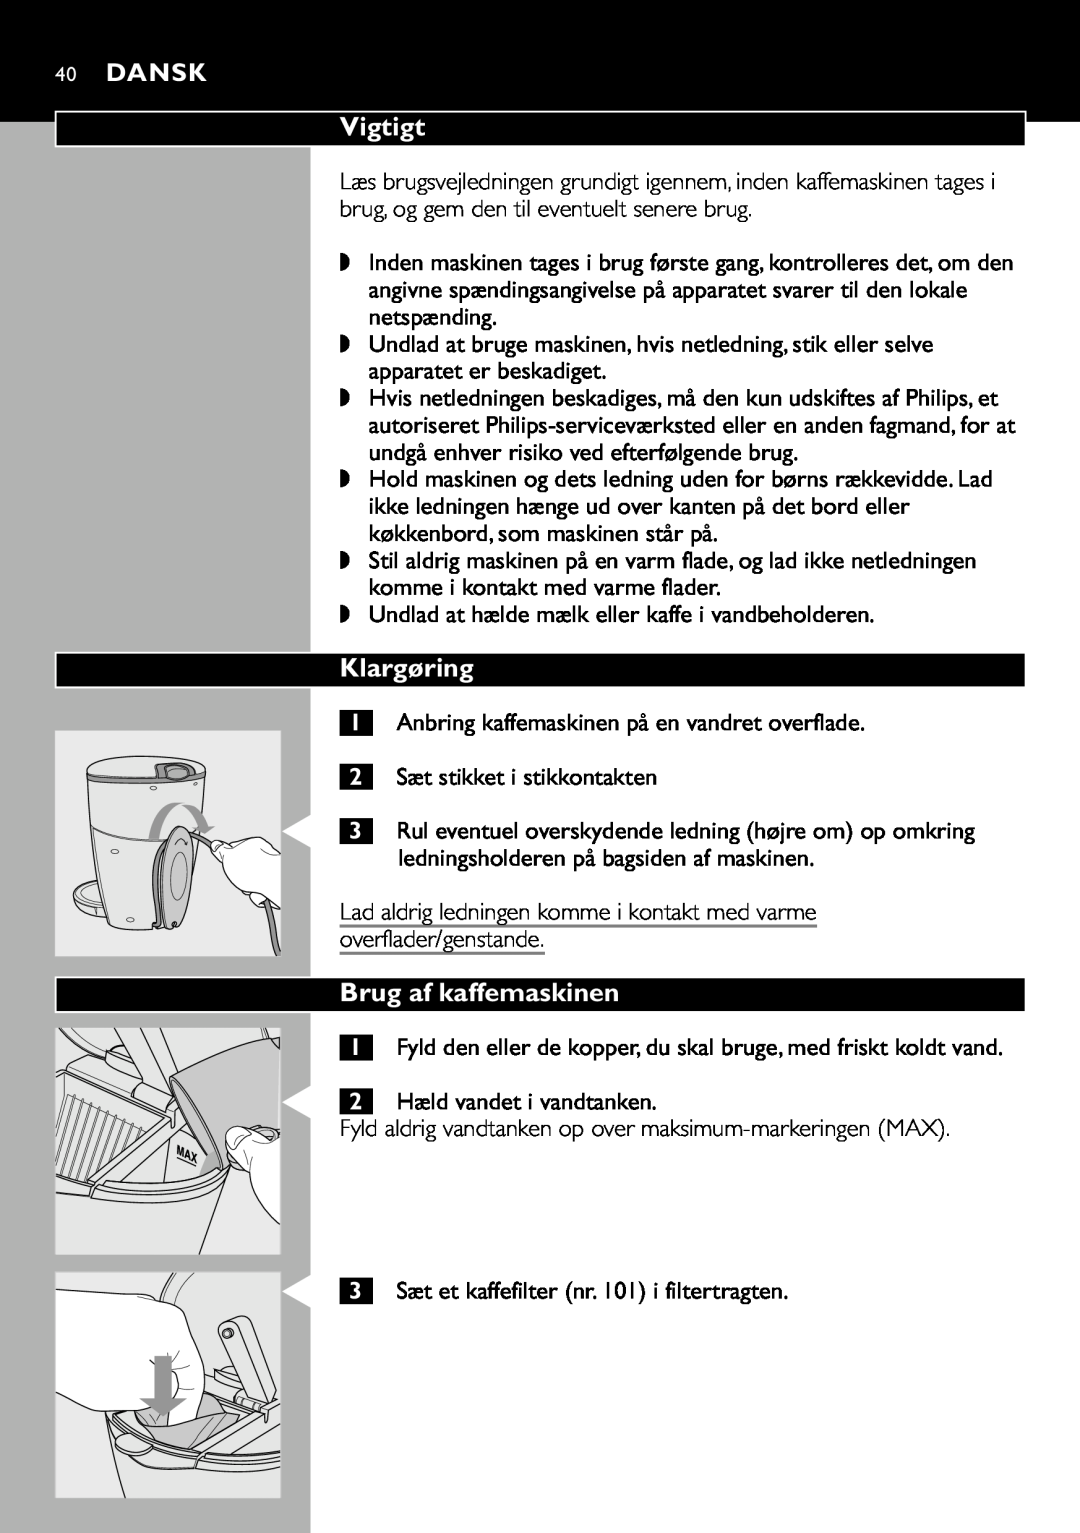 Cucina Pro HD7140 manual Vigtigt, Klargøring, Brug af kaffemaskinen, 40DANSK, Sæt stikket i stikkontakten 